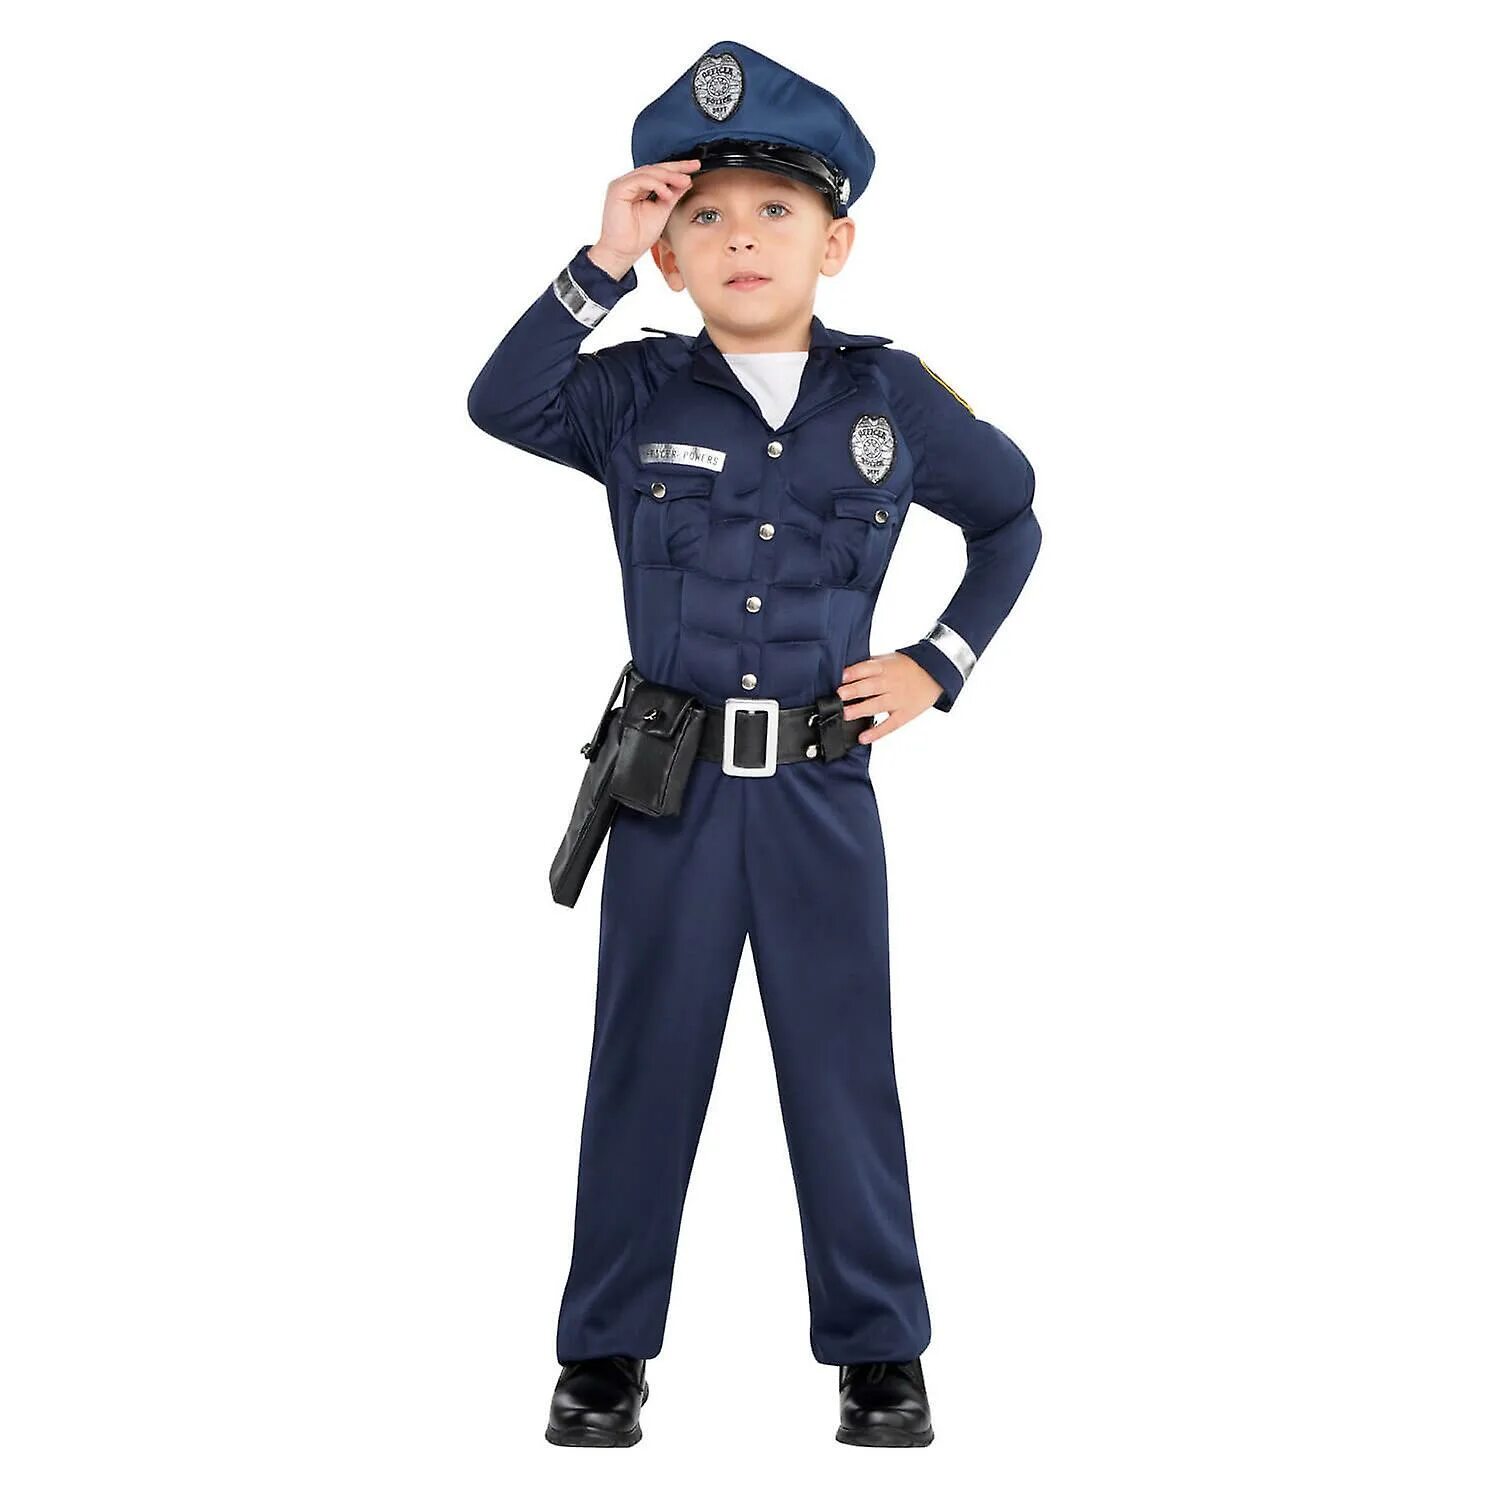 Мальчик милиционер. Костюм полицейского. Мальчик в полицейской форме. Костюм милиционера для мальчика. Детский костюм полицейского для мальчика.